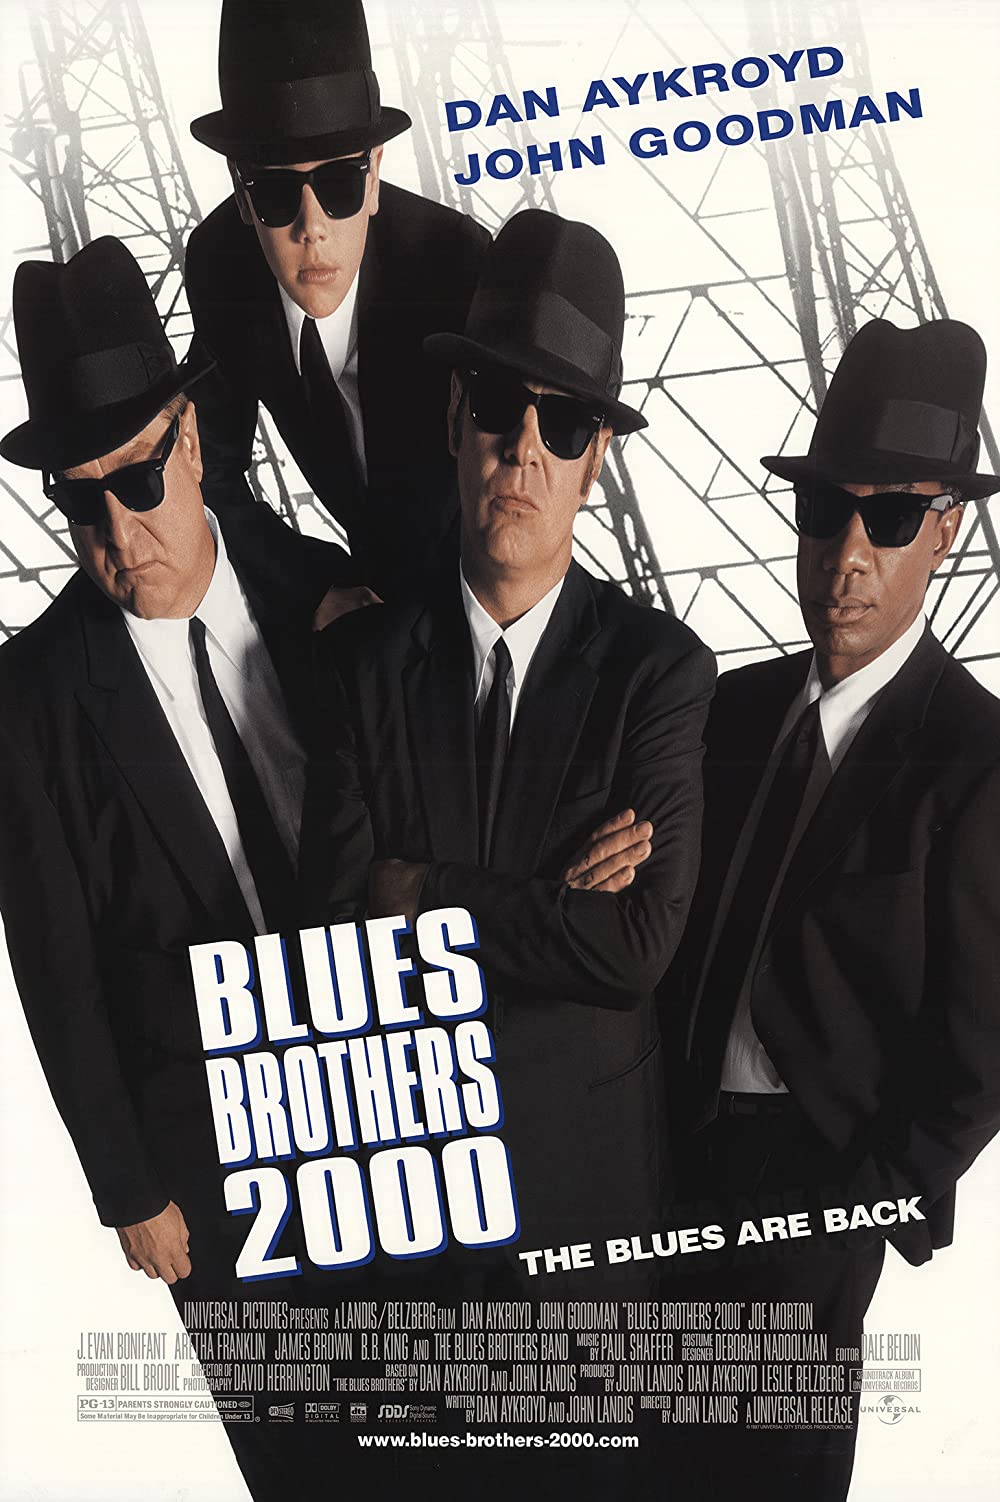 Filmbeschreibung zu Blues Brothers 2000